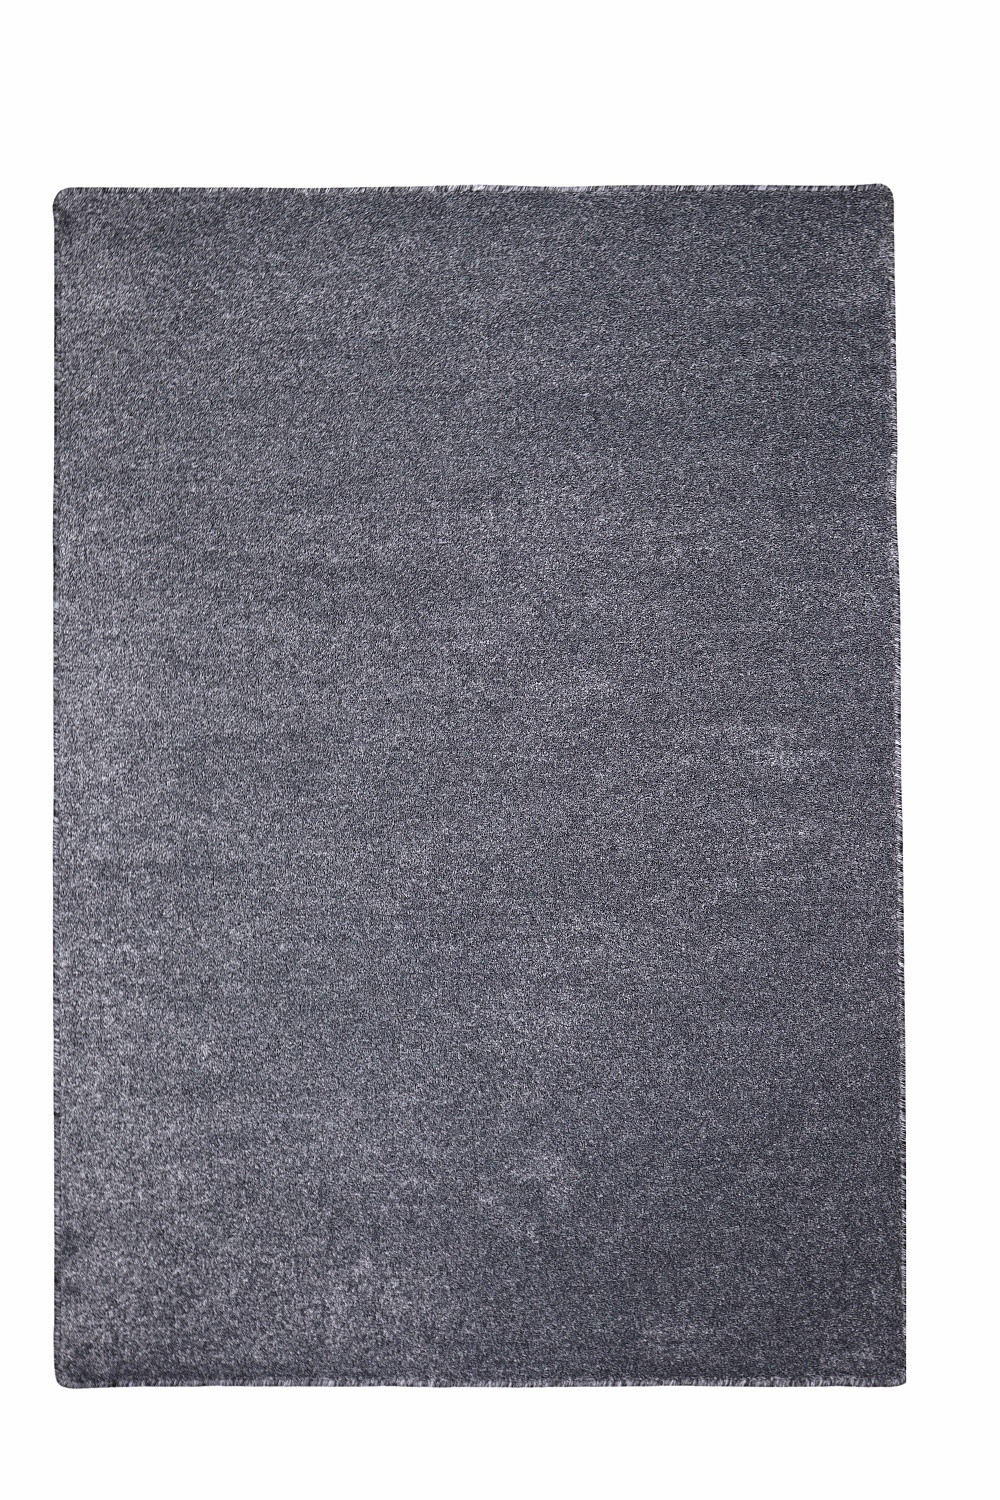 Levně Vopi koberce Kusový koberec Apollo Soft antra - 120x170 cm